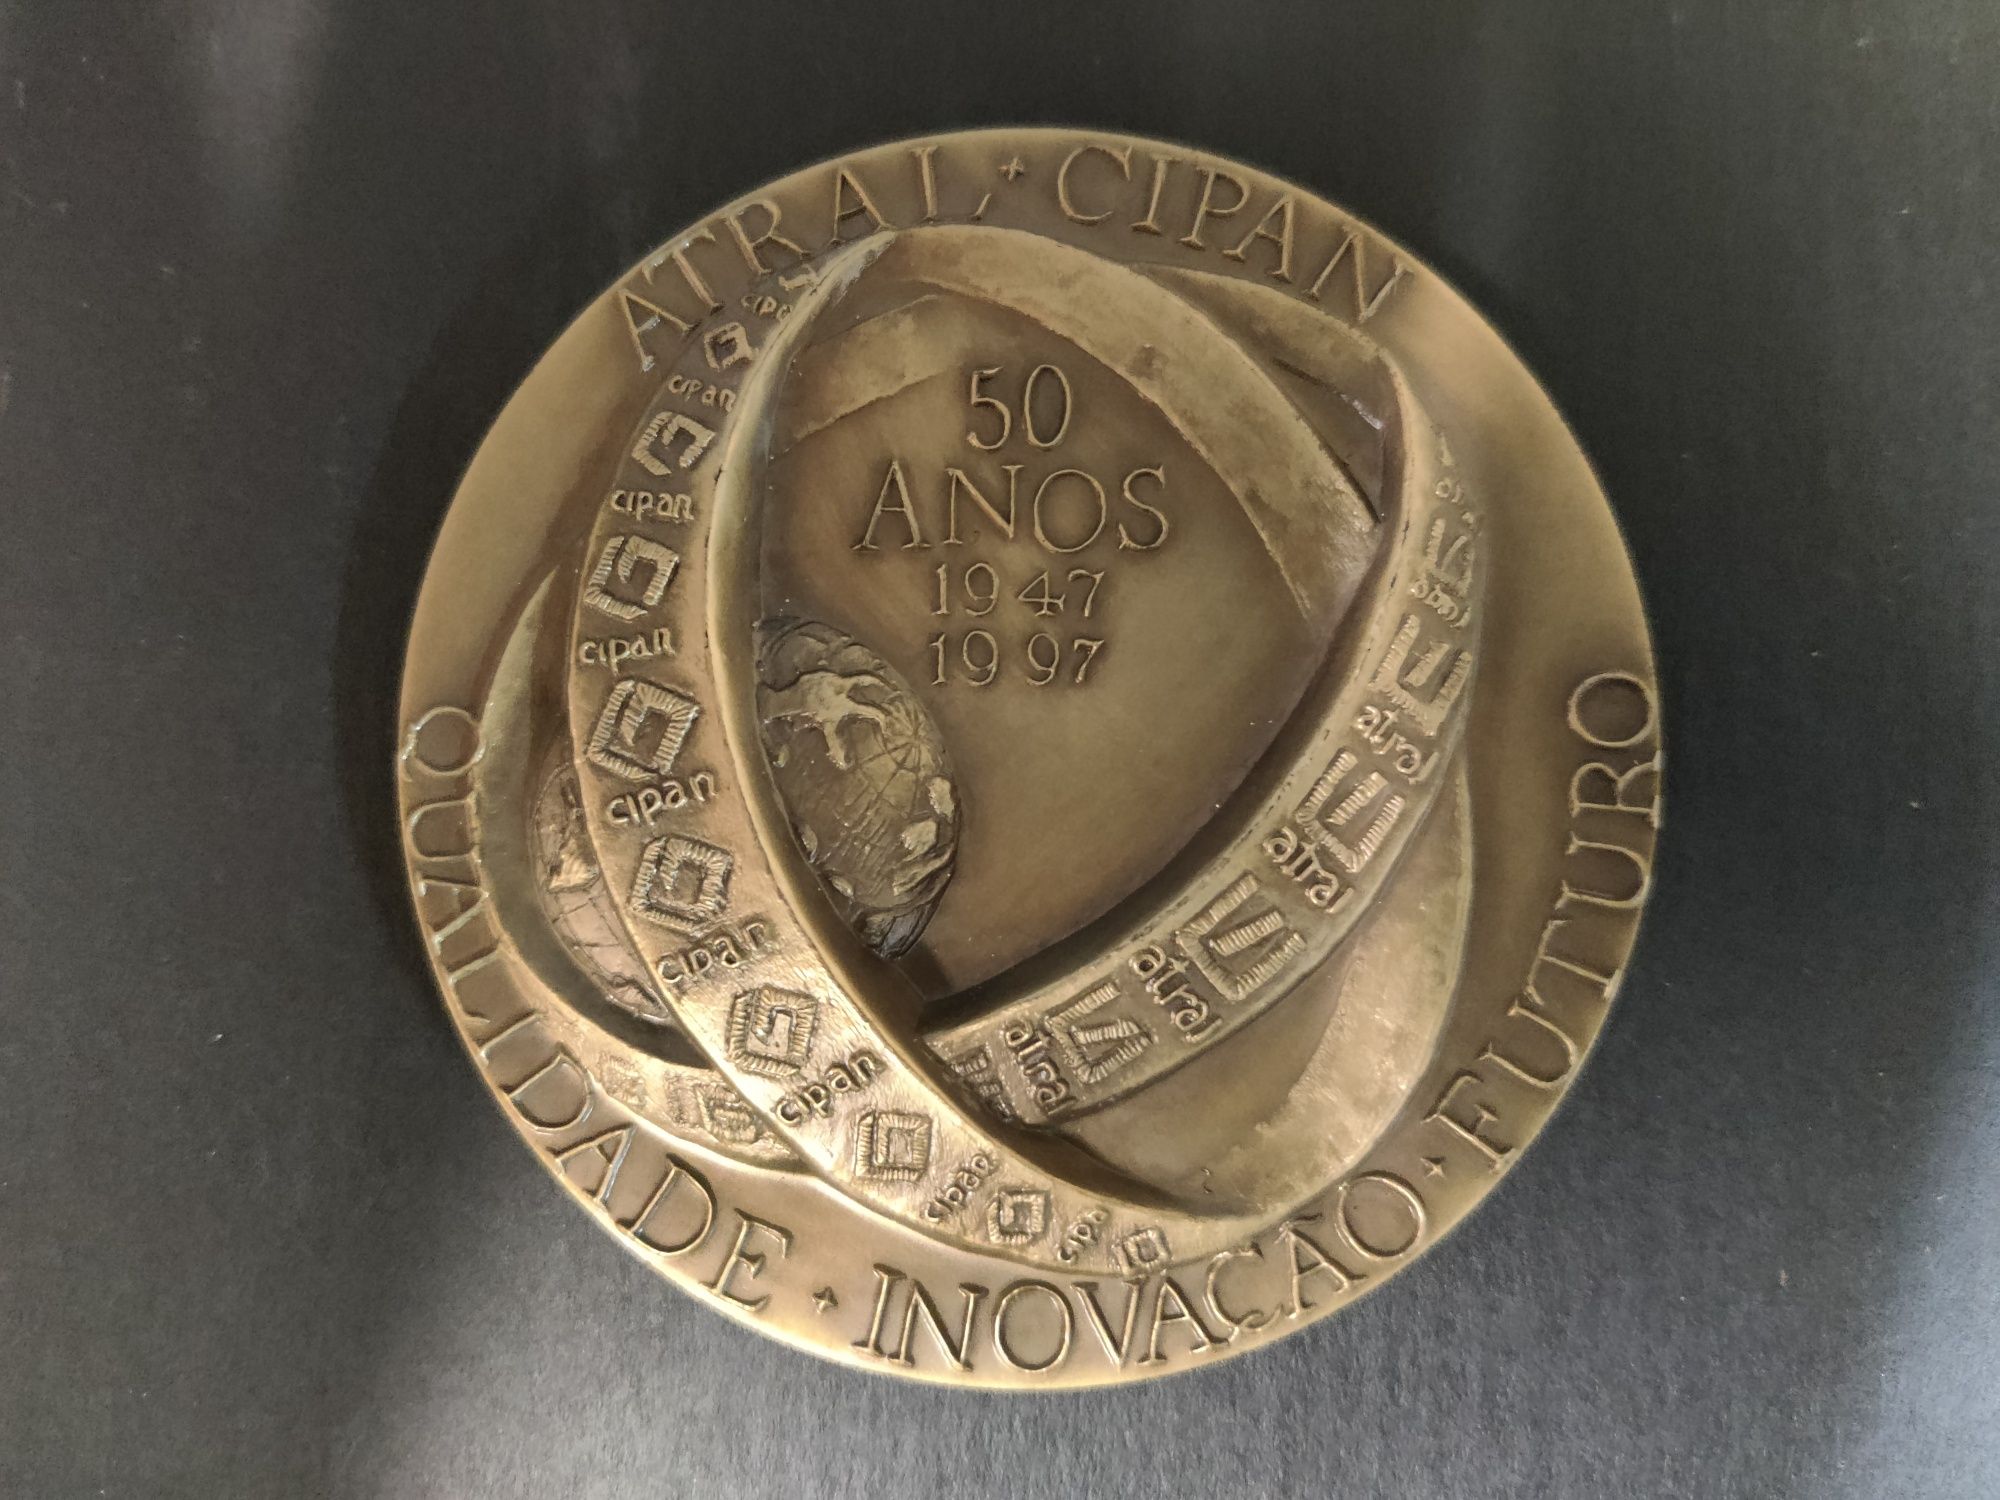 Medalha 50 anos Atral Cipan